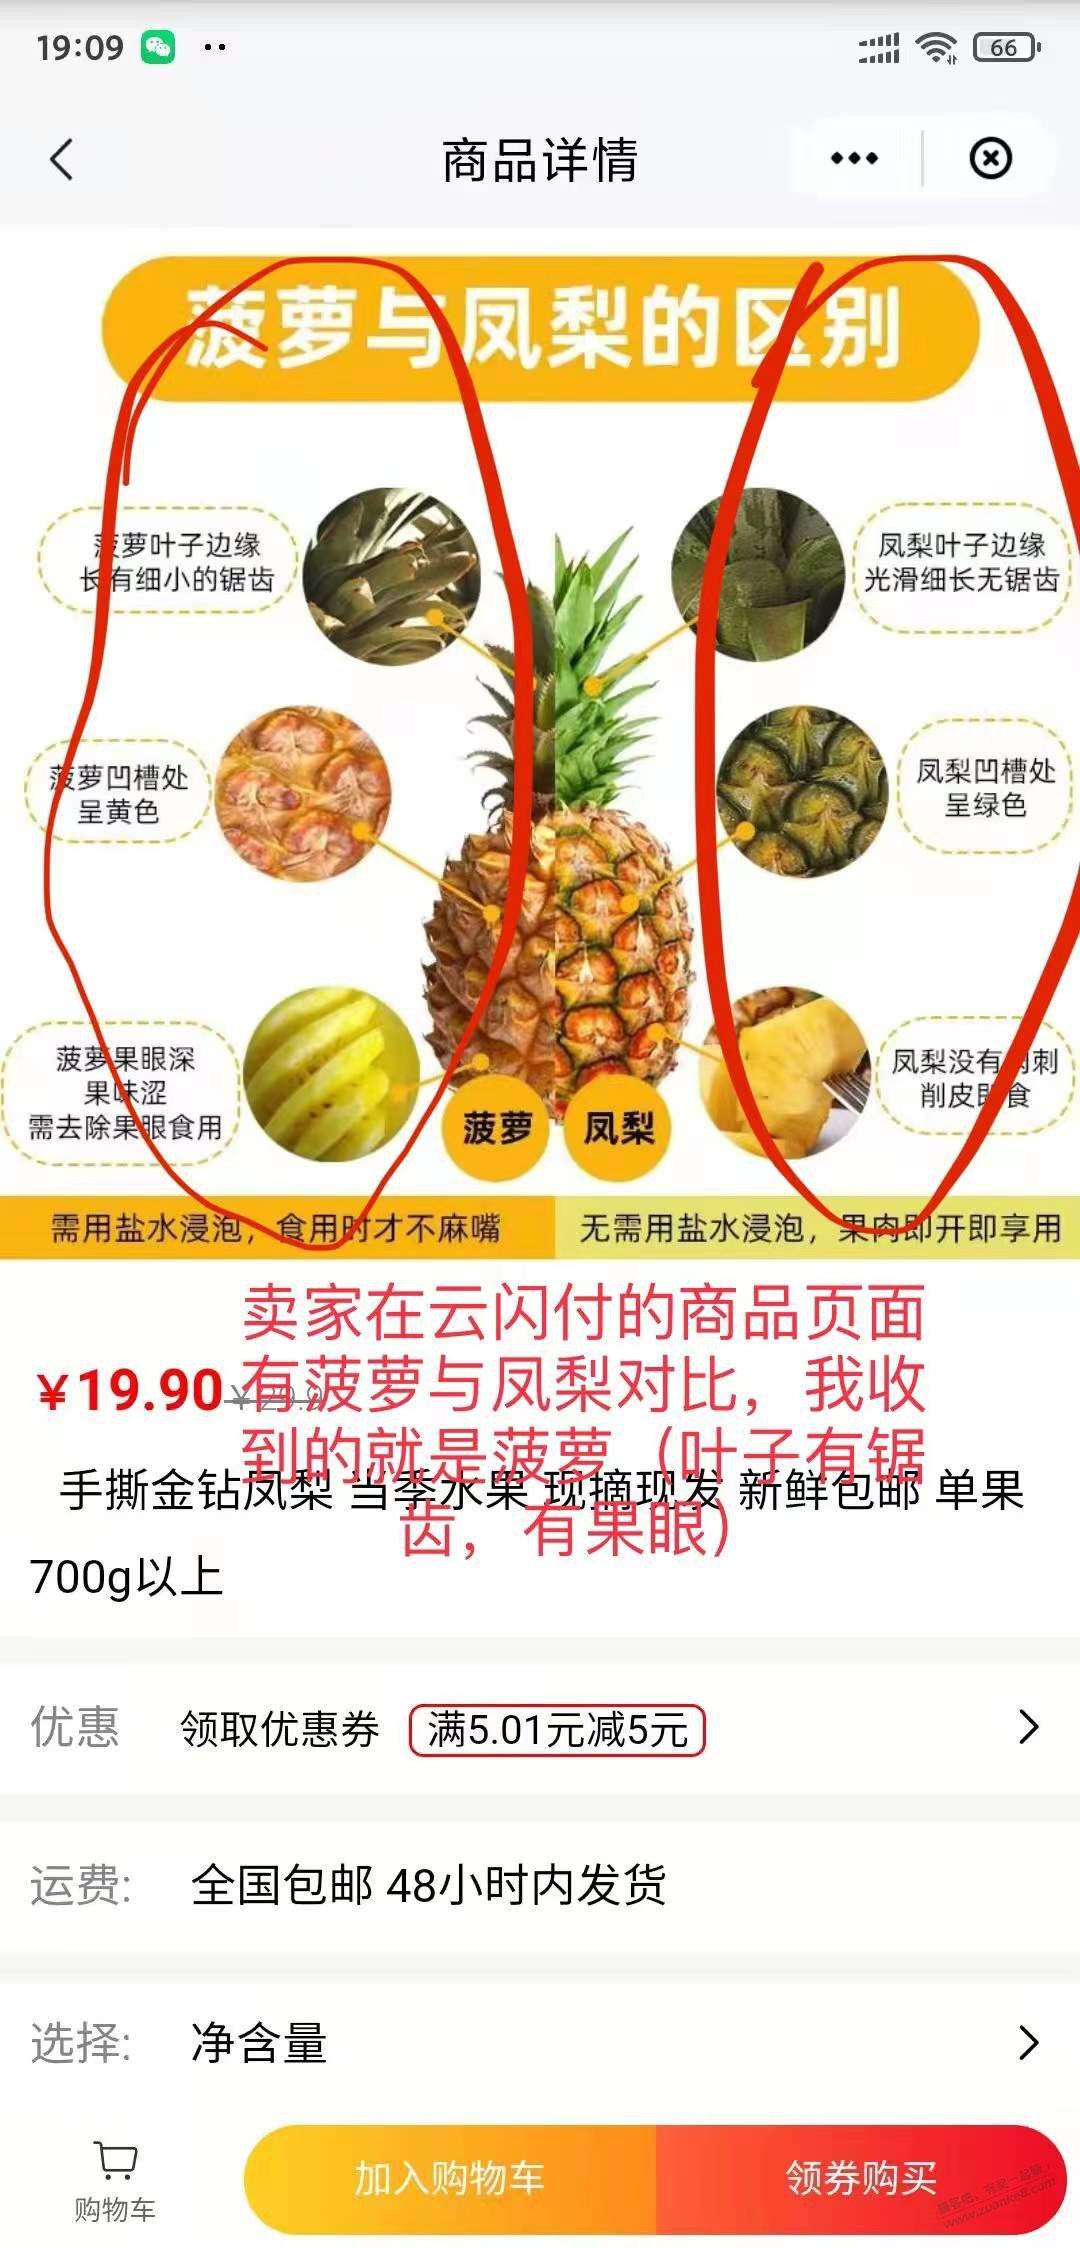 上次ysf京品买凤梨收到菠萝的后续来了-准备索赔500-惠小助(52huixz.com)